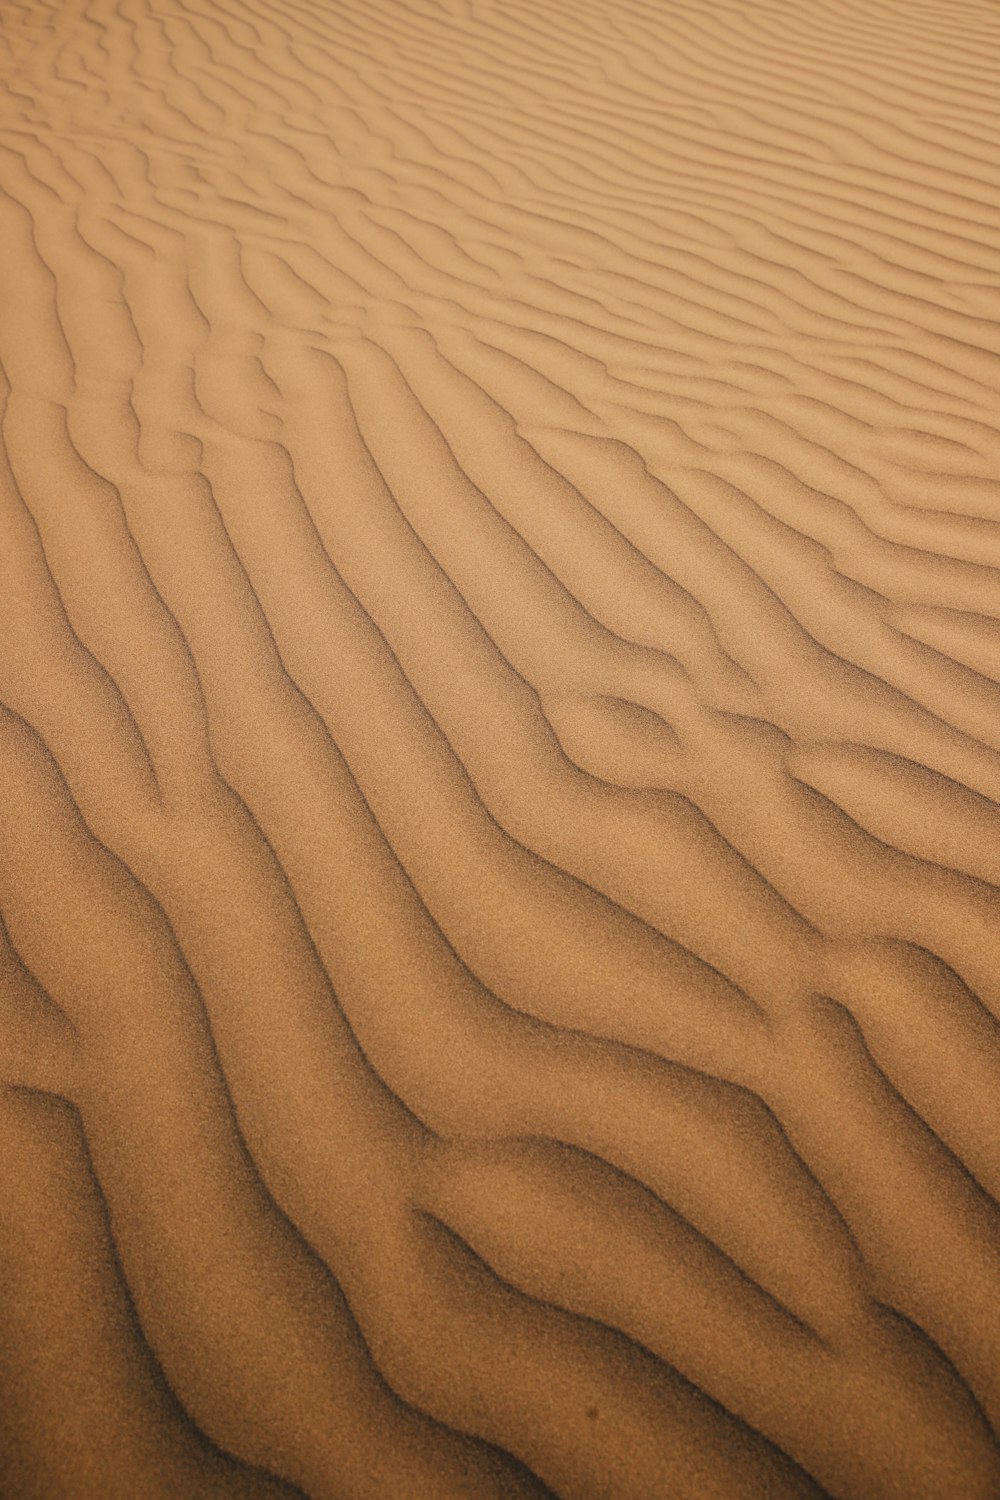 uma área arenosa com linhas na areia